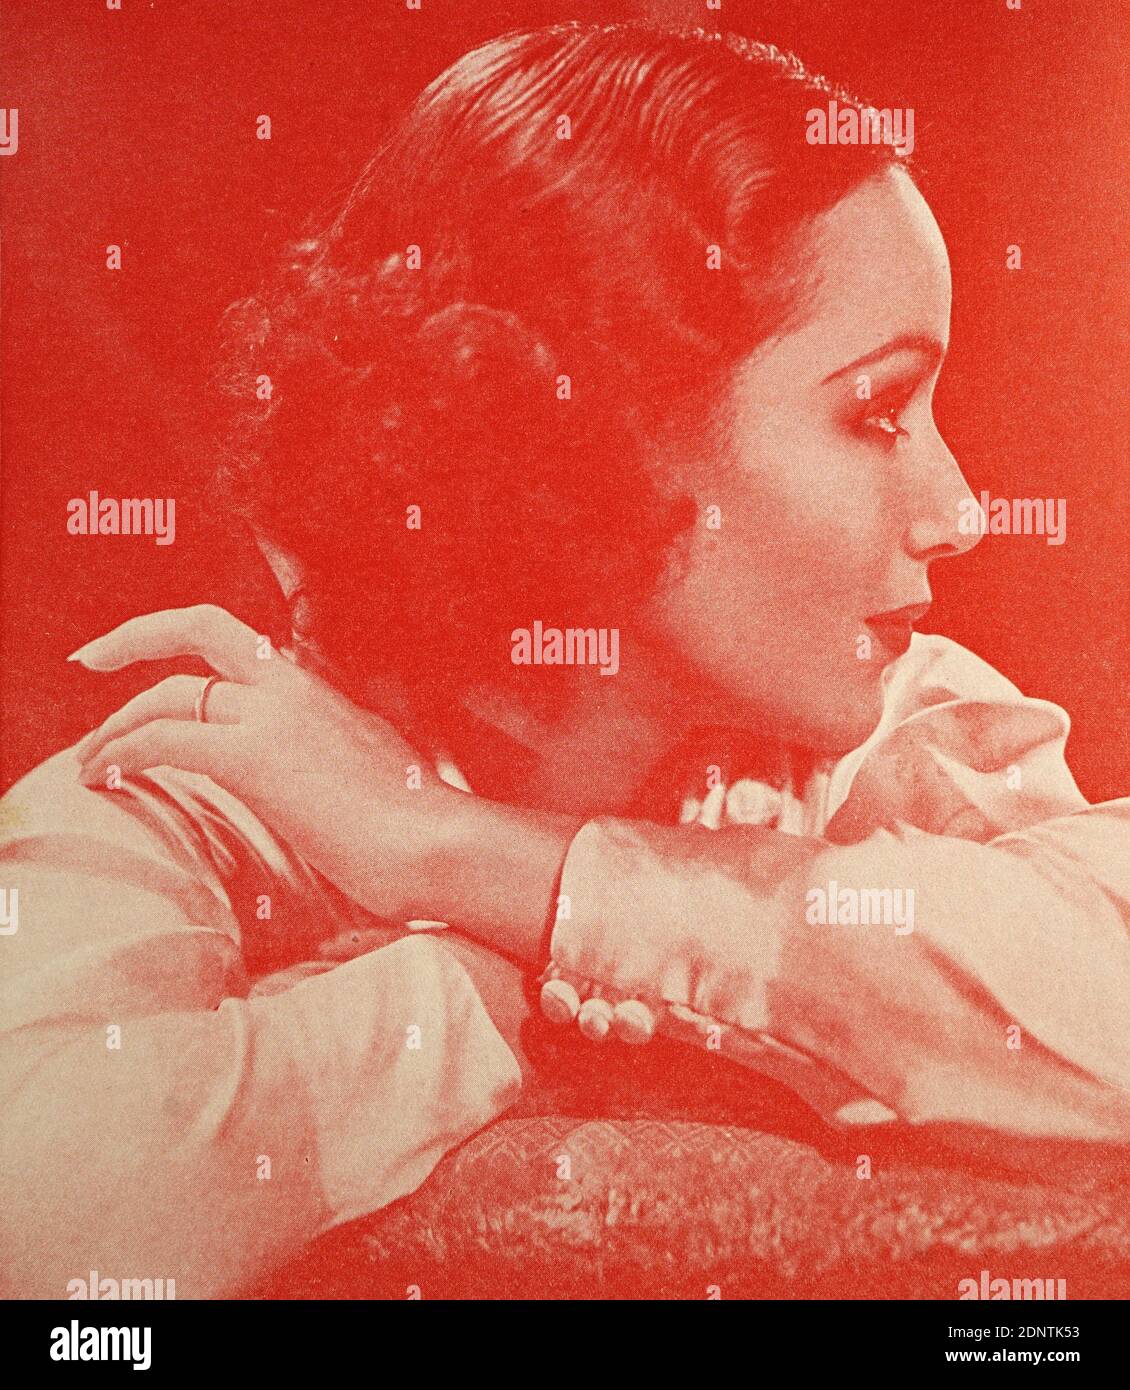 Fotografía de Dolores del Río (1904-1983) actriz, bailarina y cantante mexicana. Foto de stock